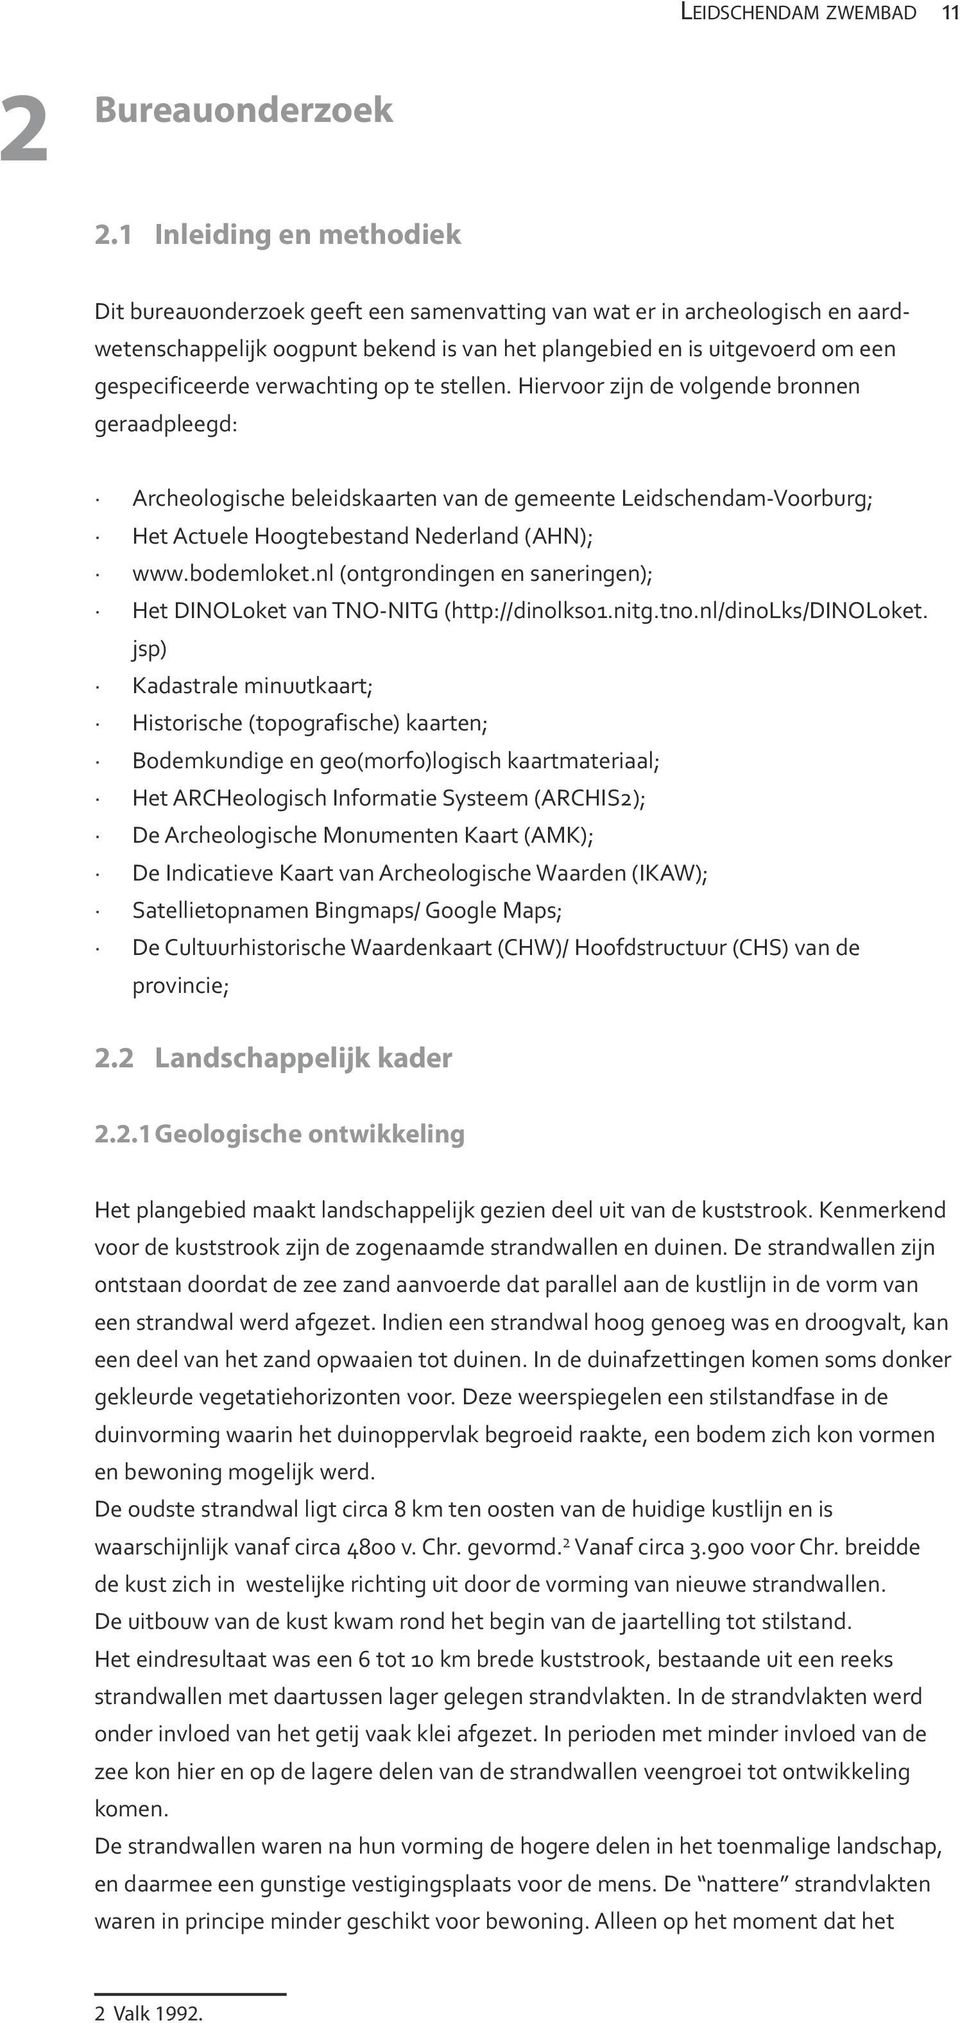 verwachting op te stellen. Hiervoor zijn de volgende bronnen geraadpleegd: Archeologische beleidskaarten van de gemeente Leidschendam-Voorburg; Het Actuele Hoogtebestand Nederland (AHN); www.